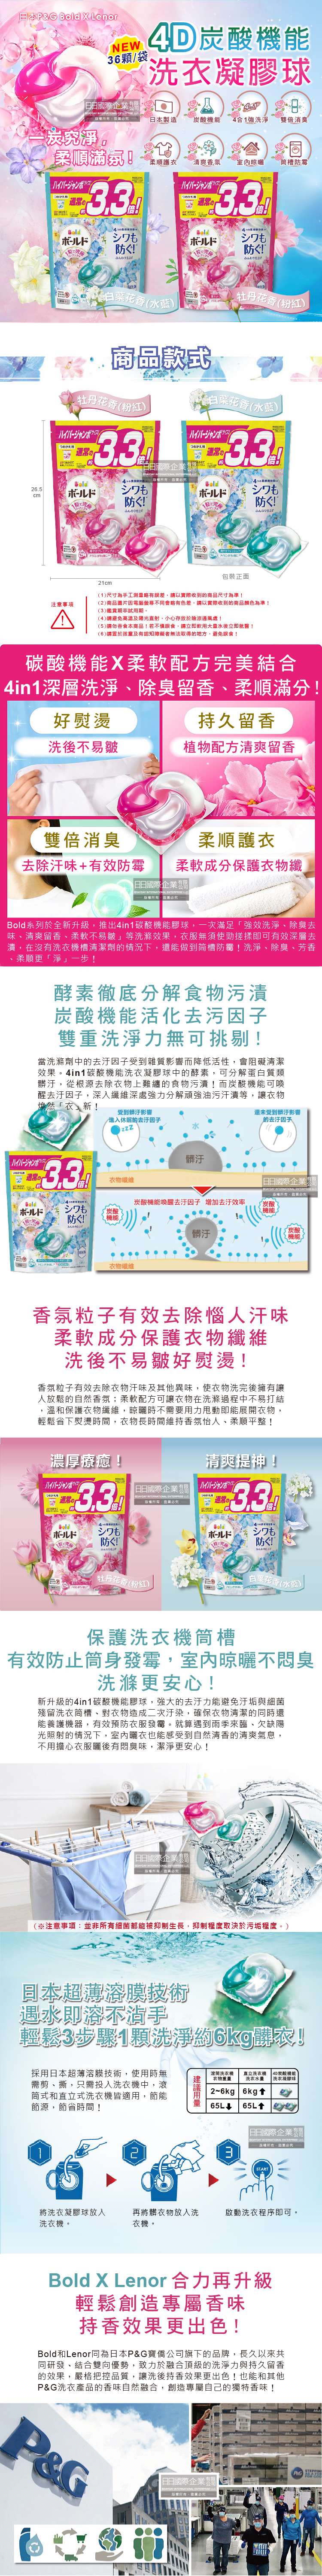 (清潔-衣物)日本PG_Bold_4in1炭酸機能香氛洗衣凝膠球36顆袋裝(2款)介紹圖